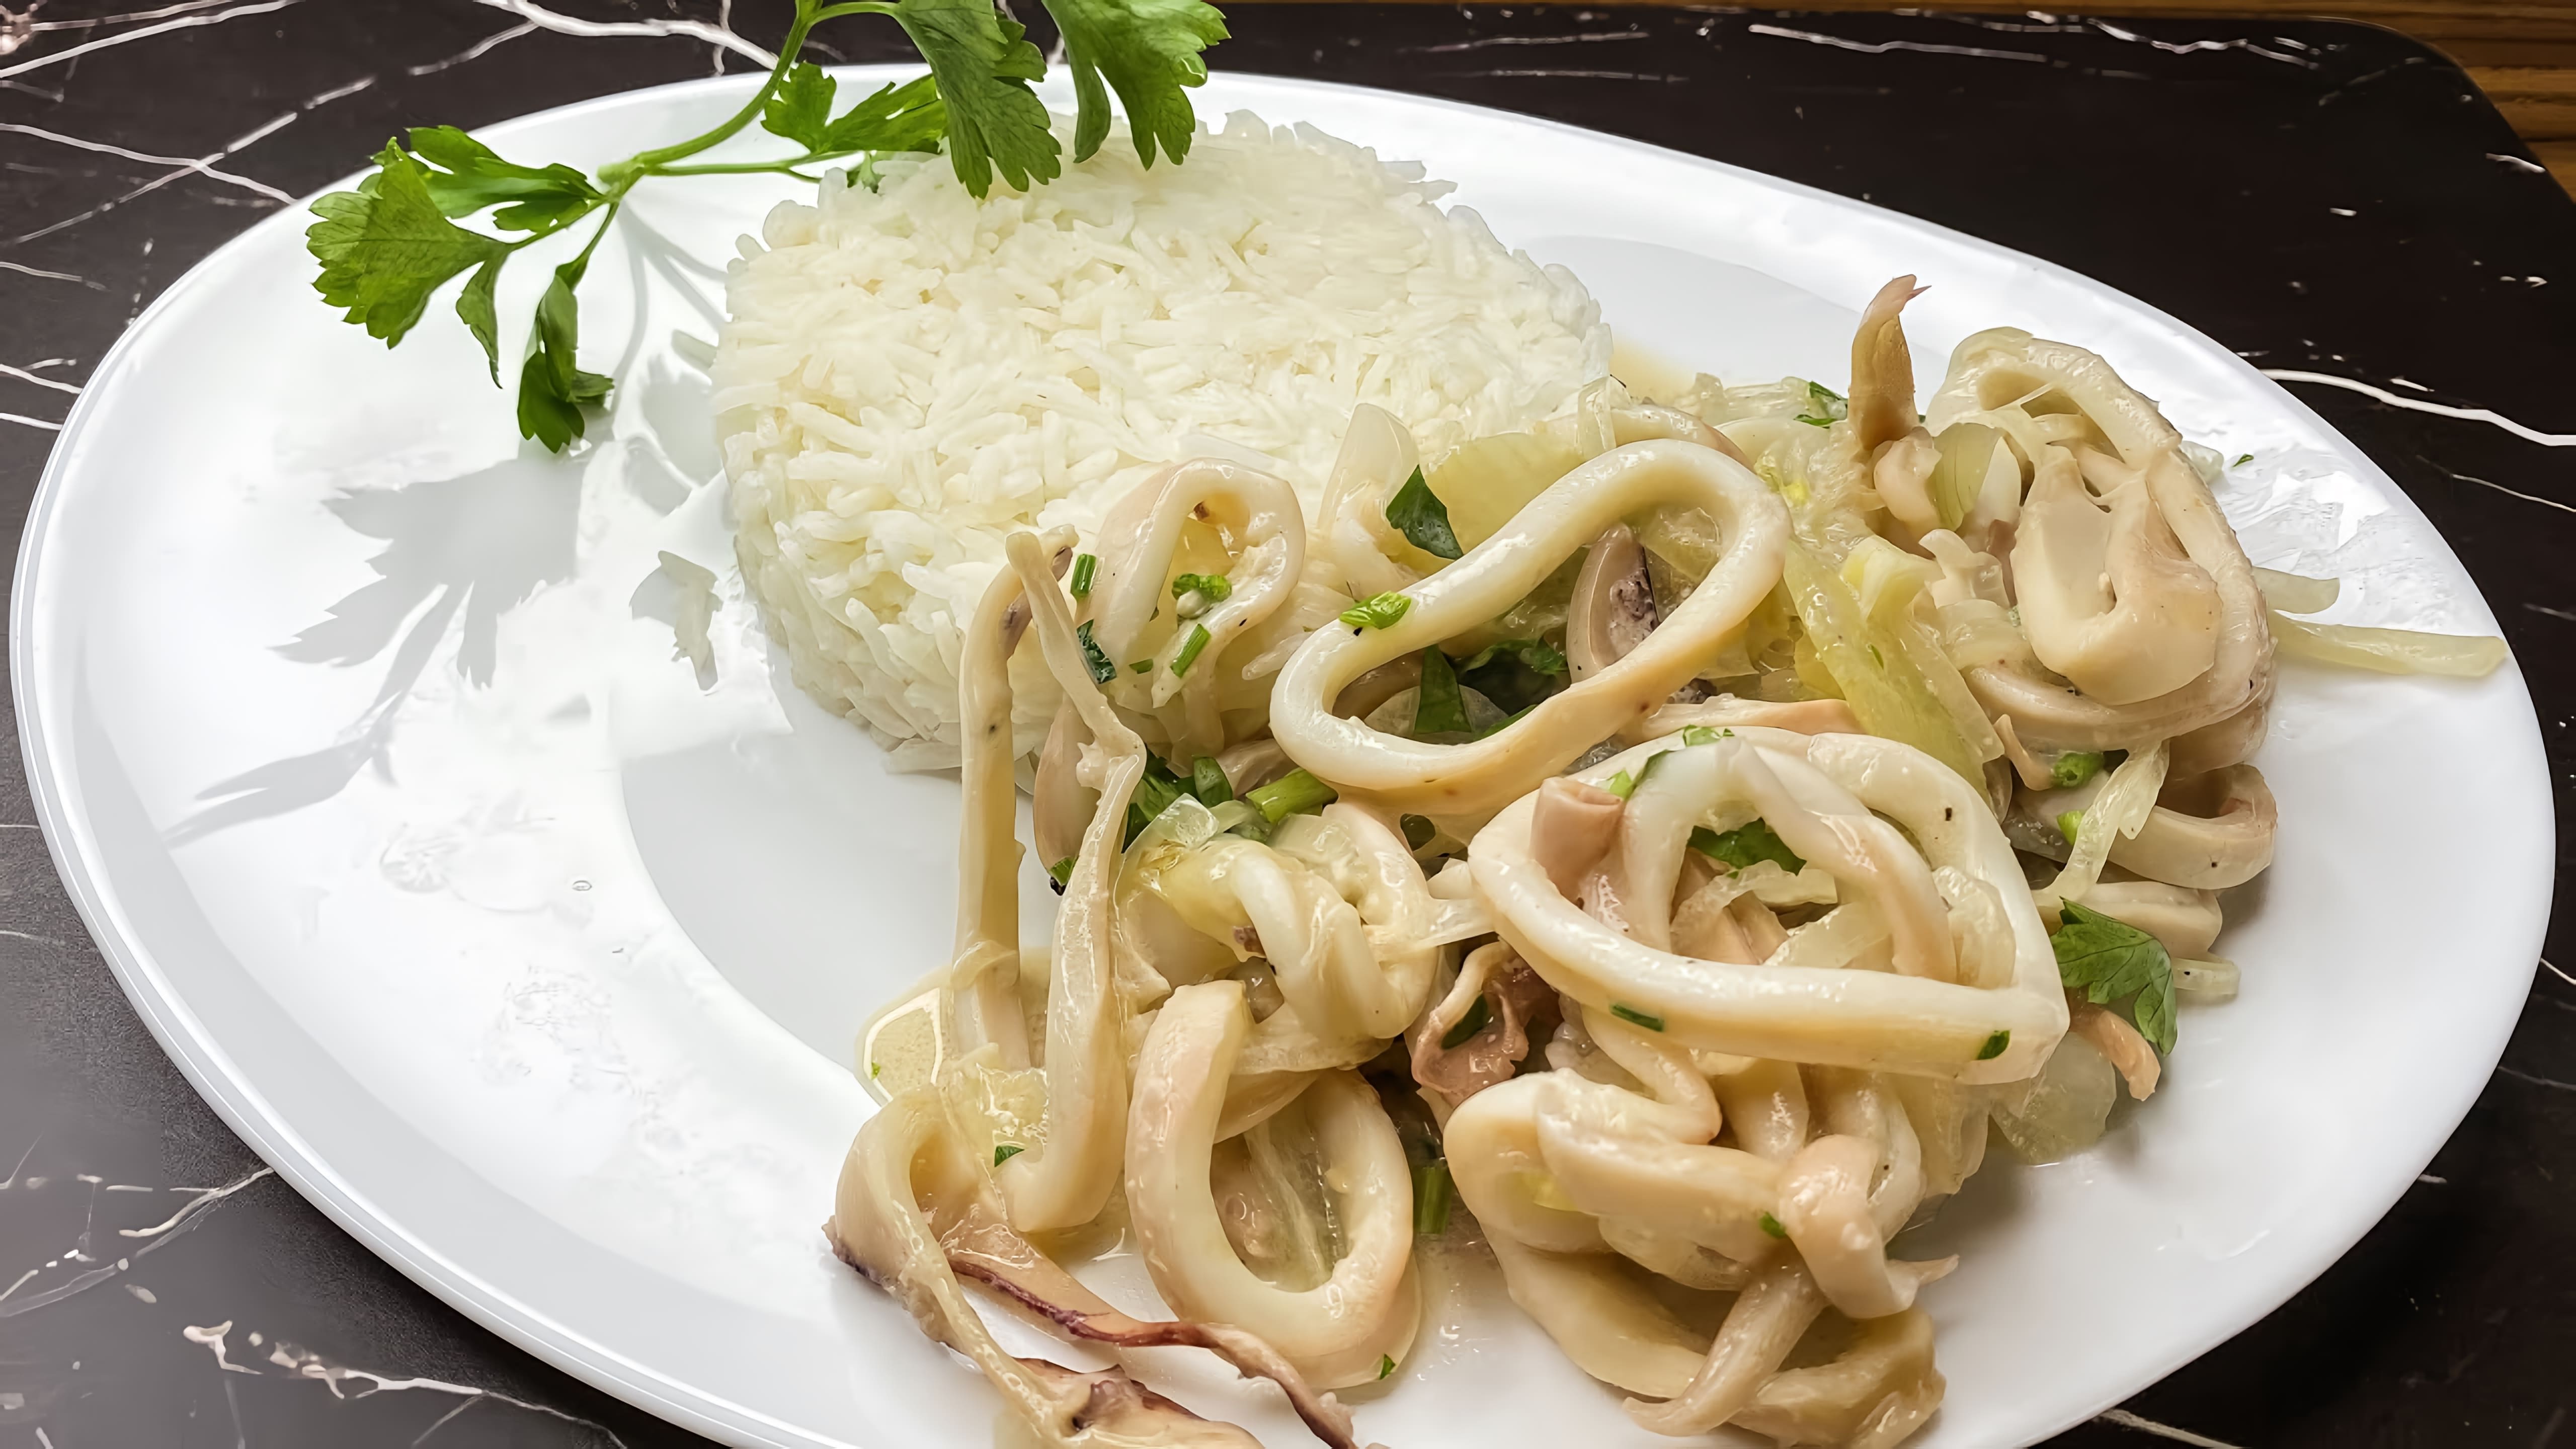 В этом видео демонстрируется процесс приготовления вкусного и полезного блюда - кальмаров с рисом